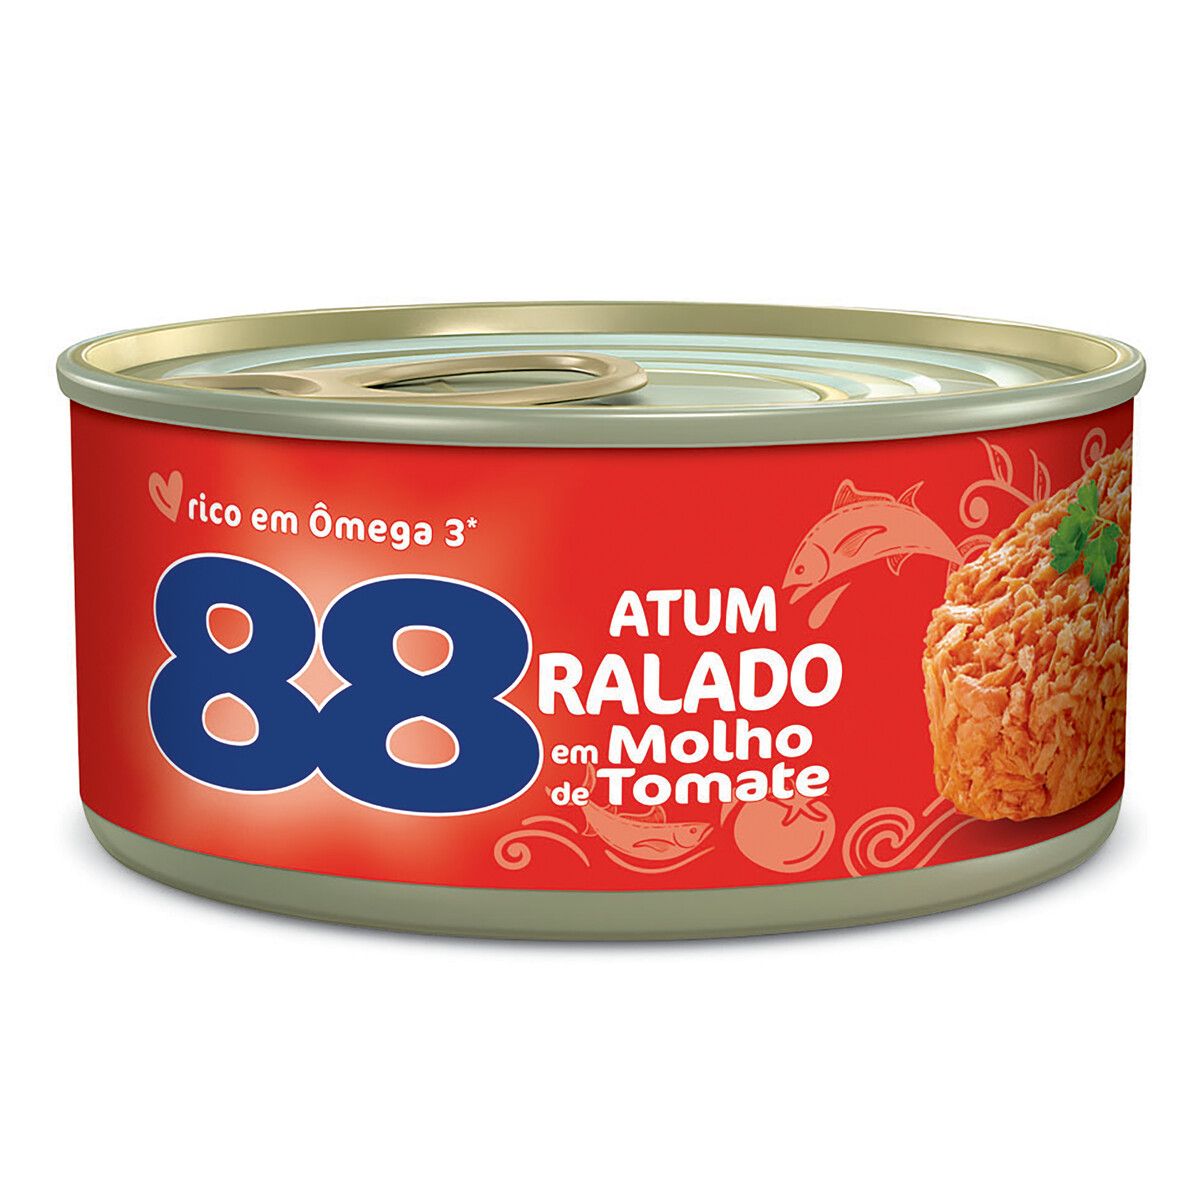 Atum 88 Ralado em Molho de TomateLata 140g